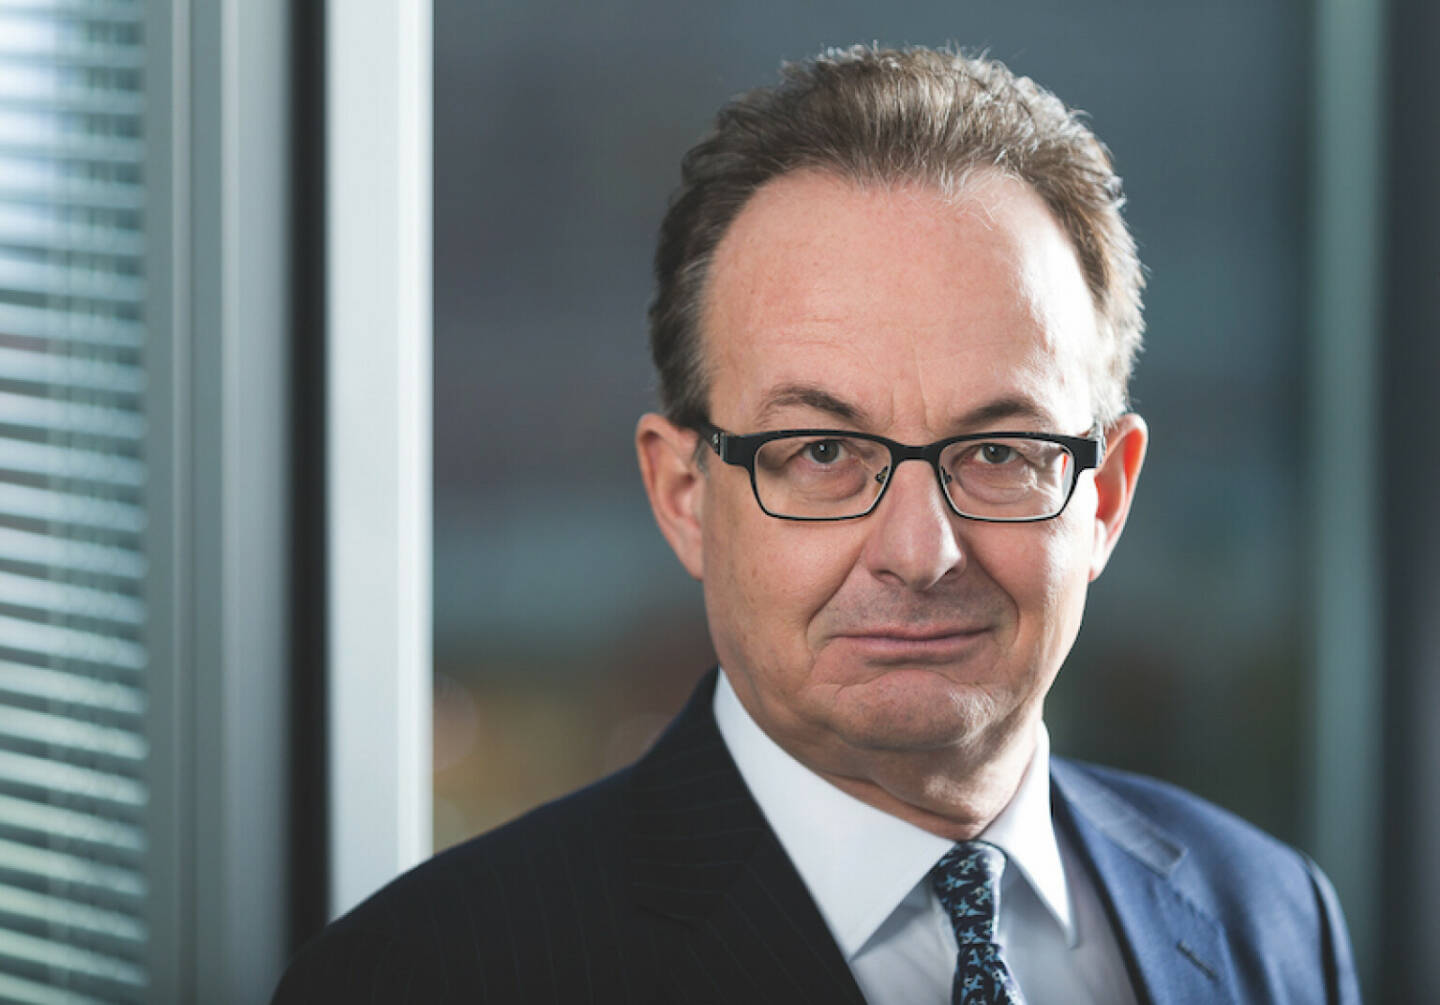 Rupert Hengster, Geschäftsführer von HLK, dem unabhängigen Finanzberater für institutionelle Investoren; Credit: HLK